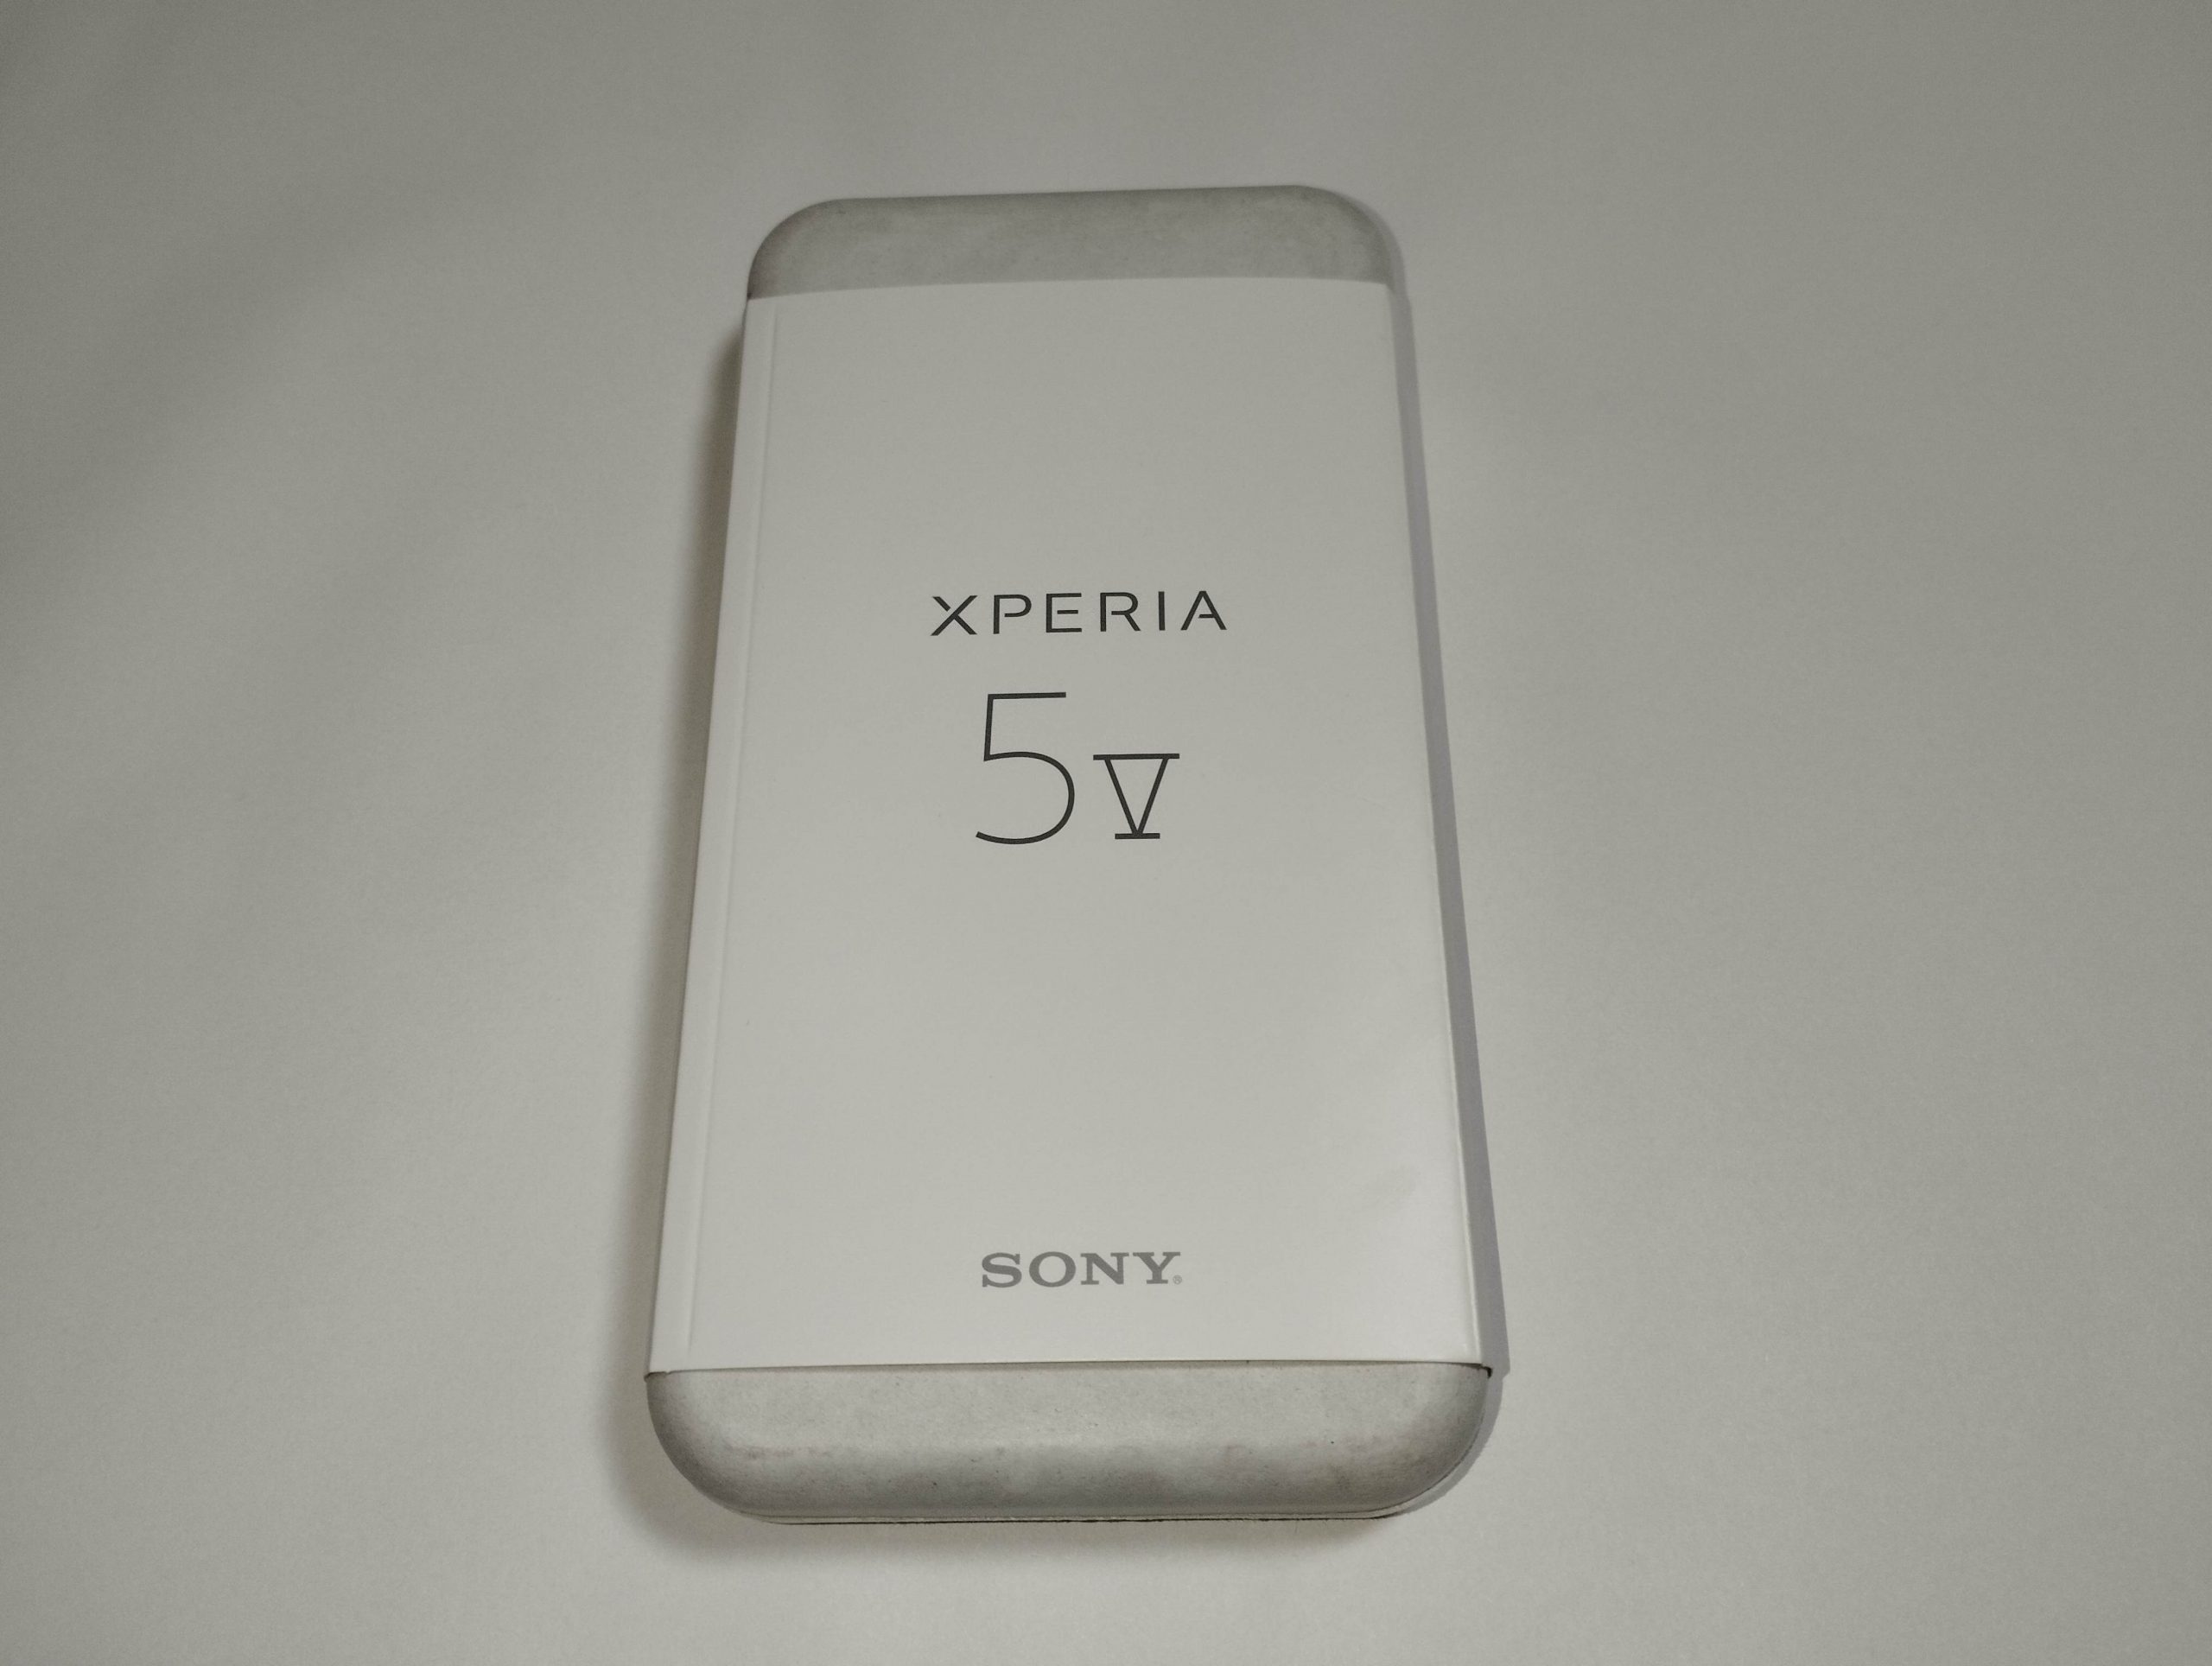 Xperia 5 V 実機画像